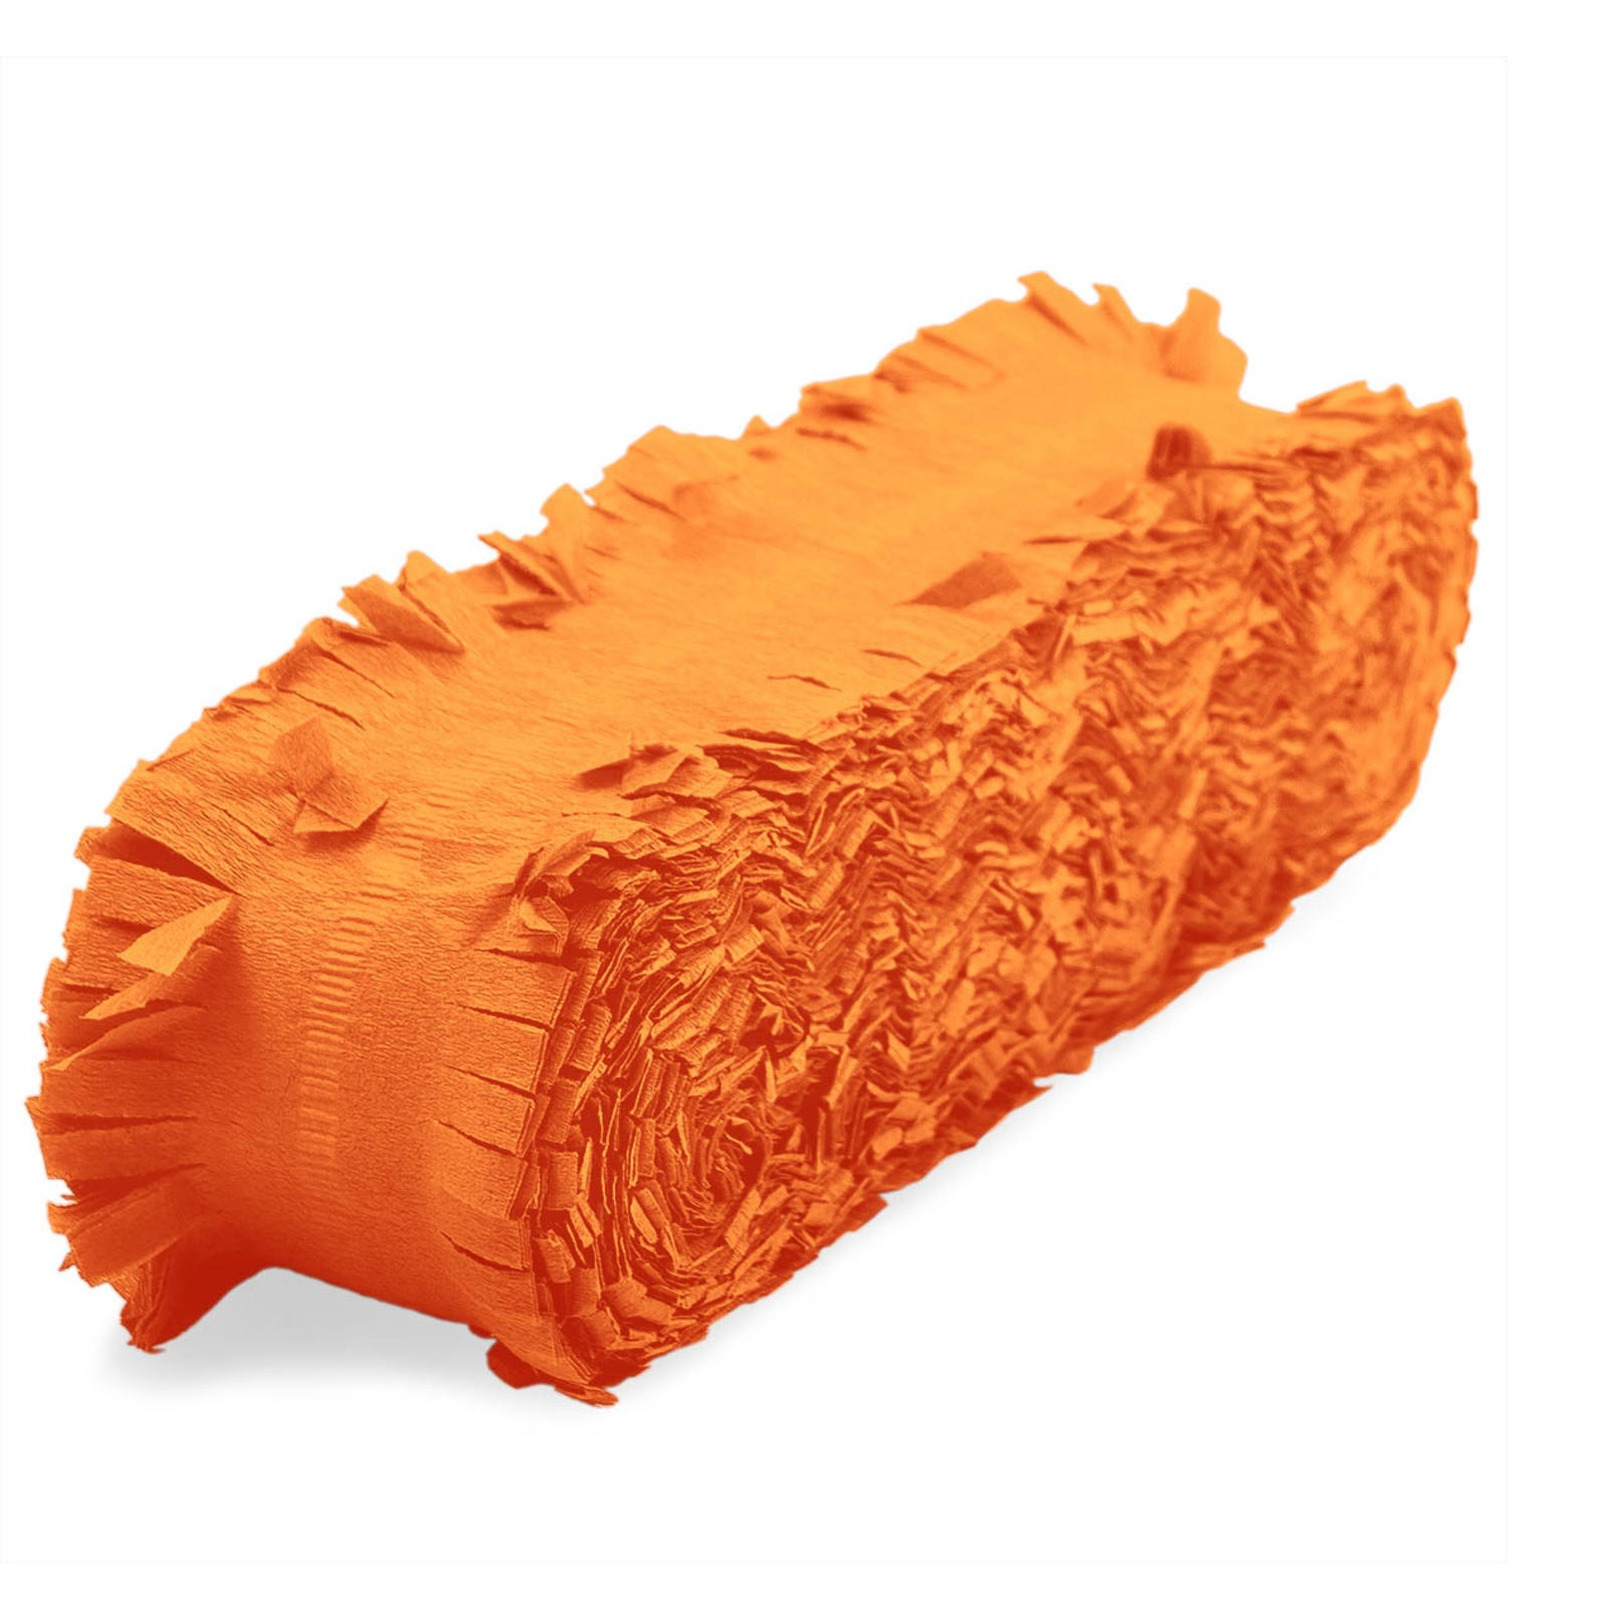 Feest/verjaardag versiering slingers oranje 24 meter crepe papier